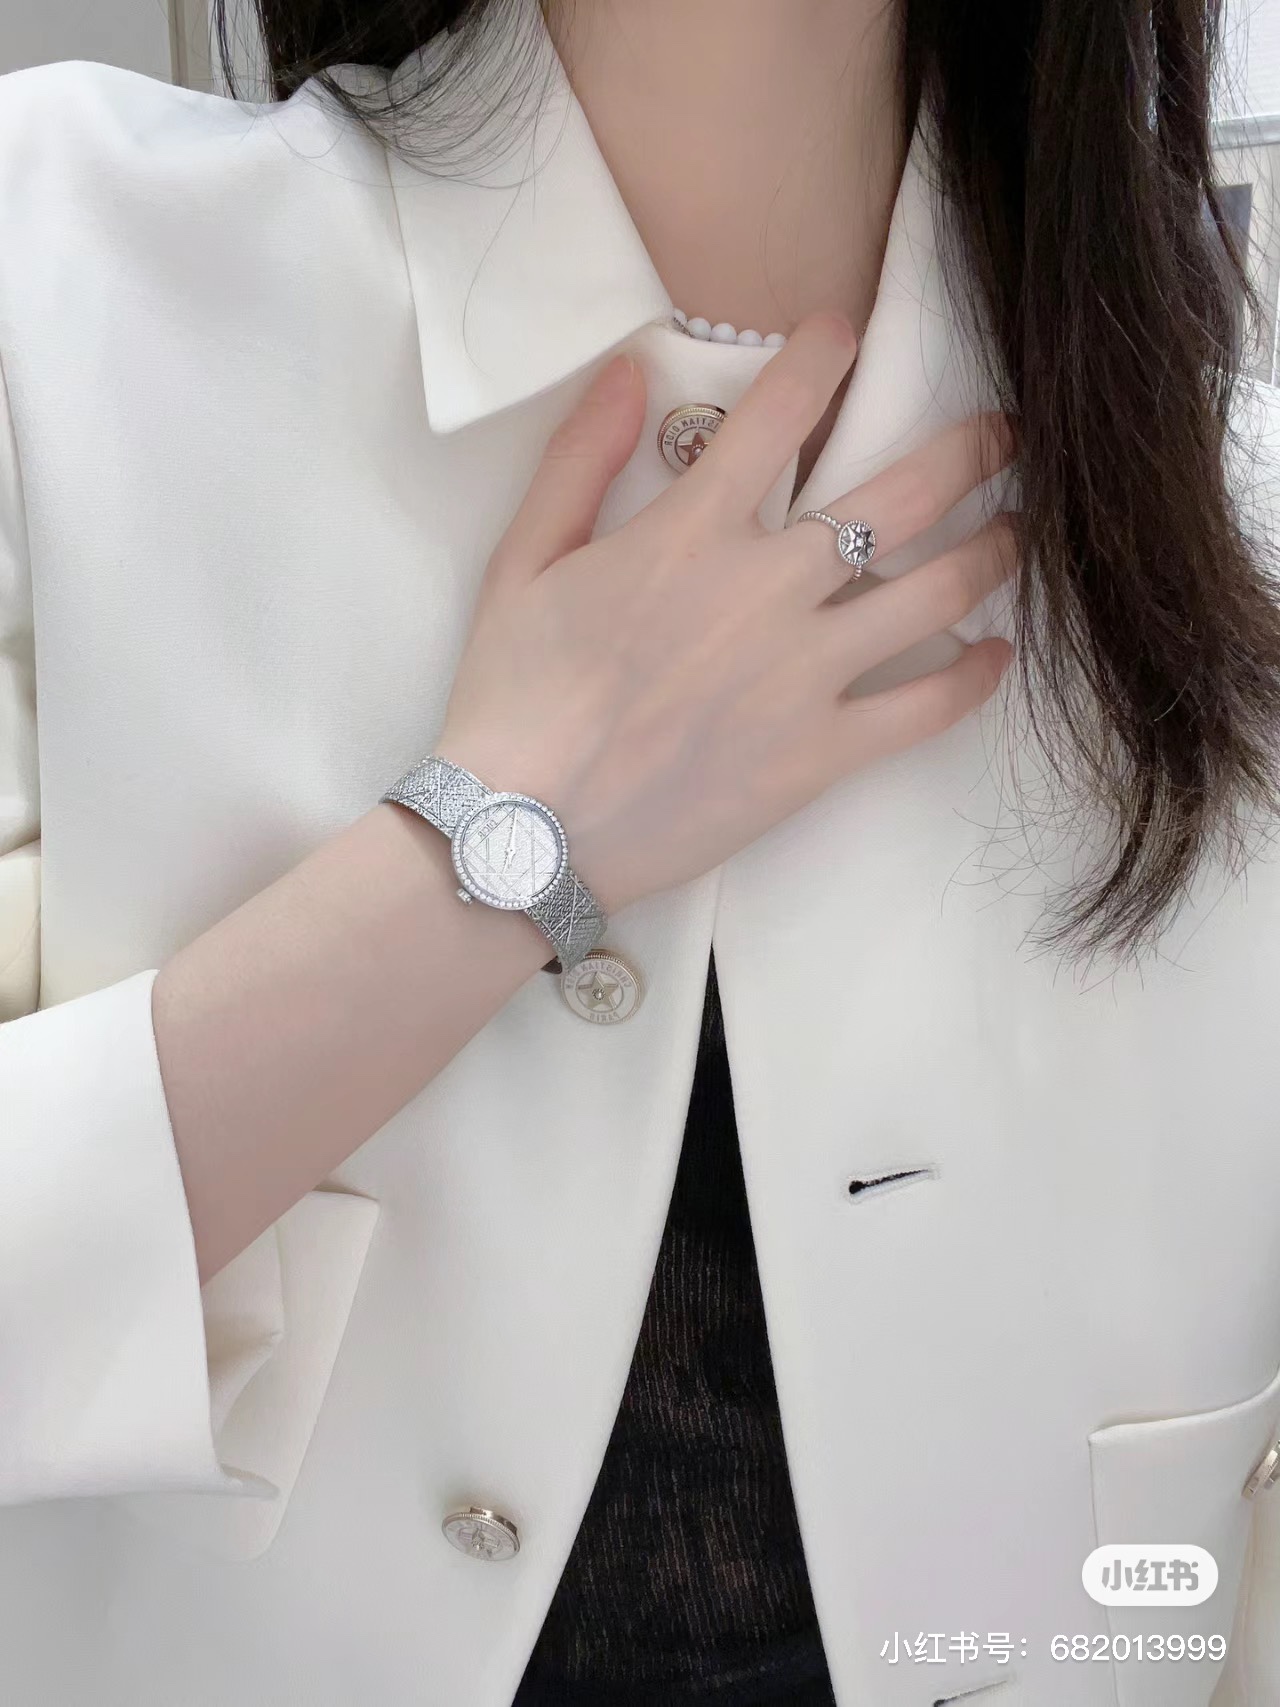 最新作 人気定番 爆買い 腕時計 ディオール偽物 優美な曲線デザイン ダイヤモンド_6